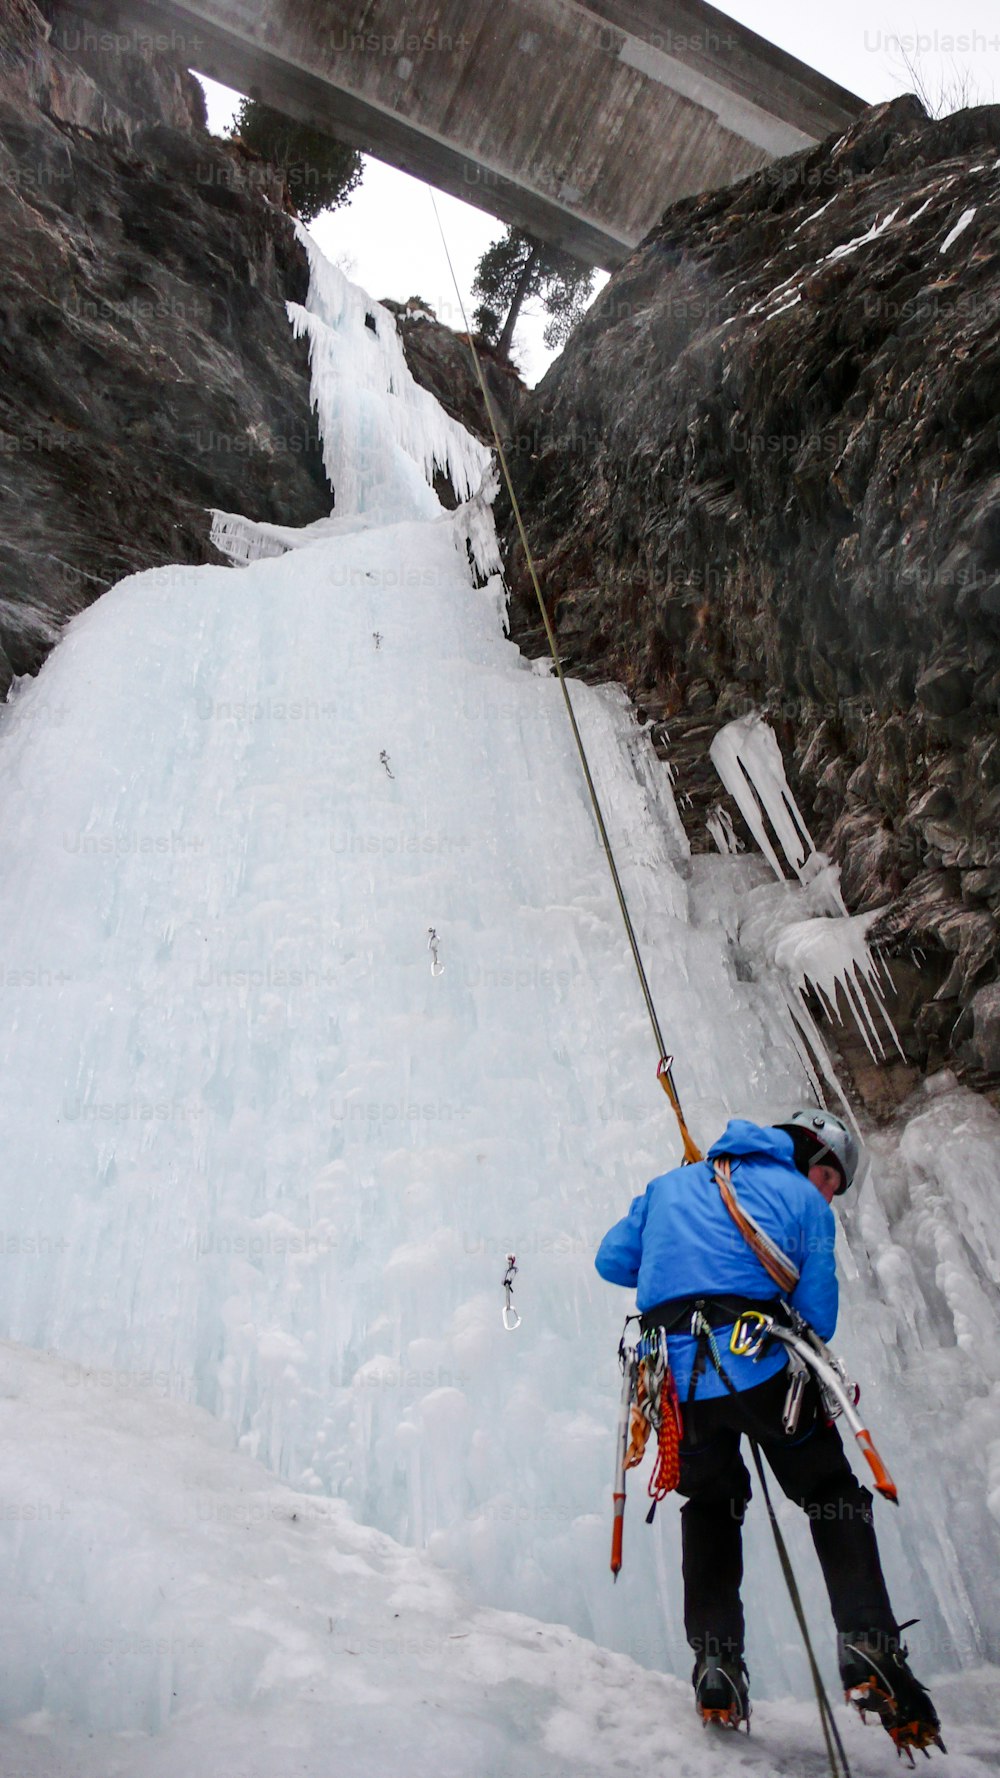 grimpeur sur glace en veste bleue descendant en rappel d’une cascade gelée dans la vallée d’Avers, dans les Alpes suisses, par une froide journée d’hiver.